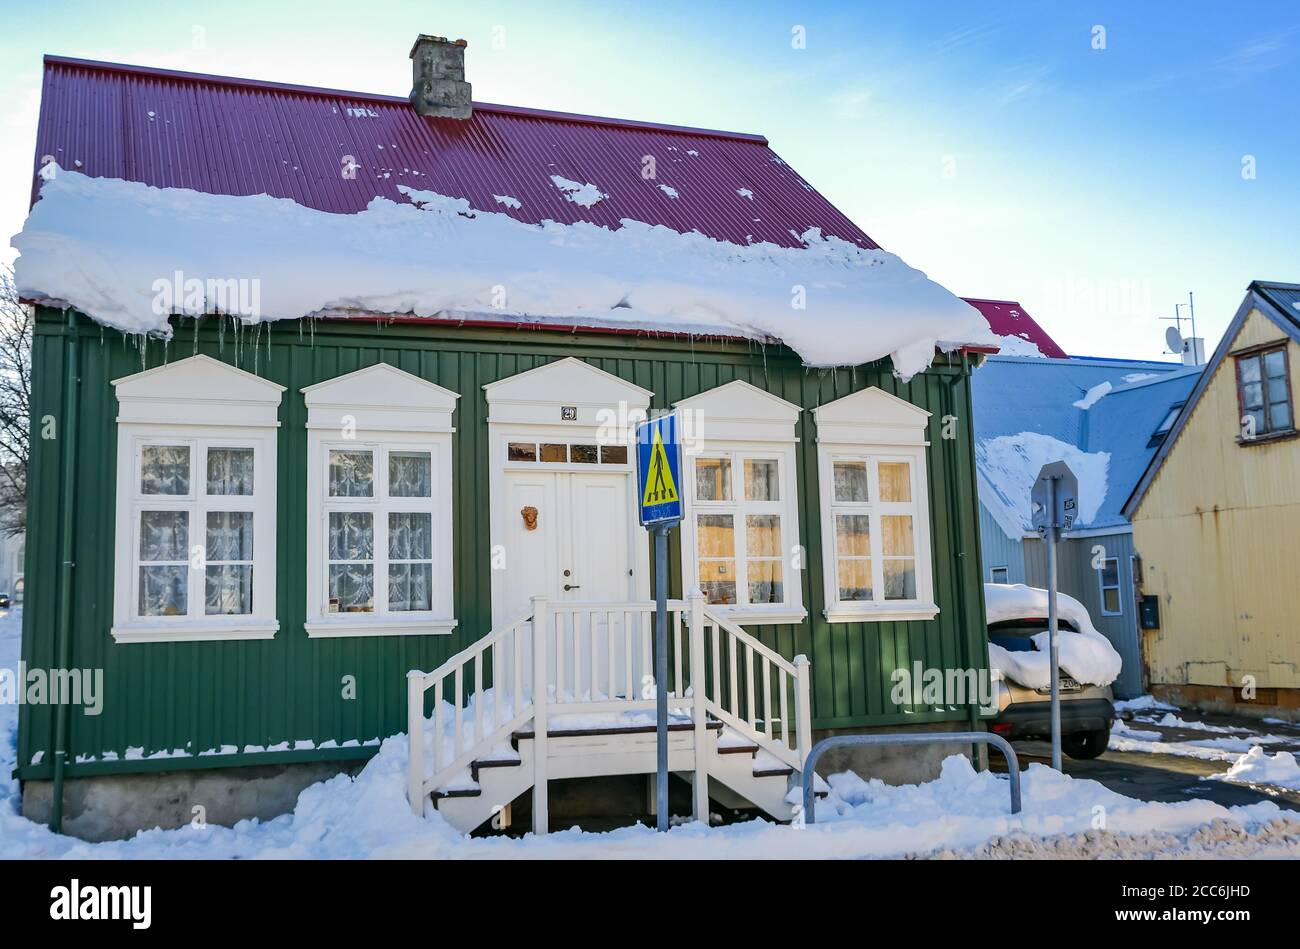 Casa tradicional construida con metal corrugado cubierto de nieve, en invierno, Rekjavik, Islandia Foto de stock